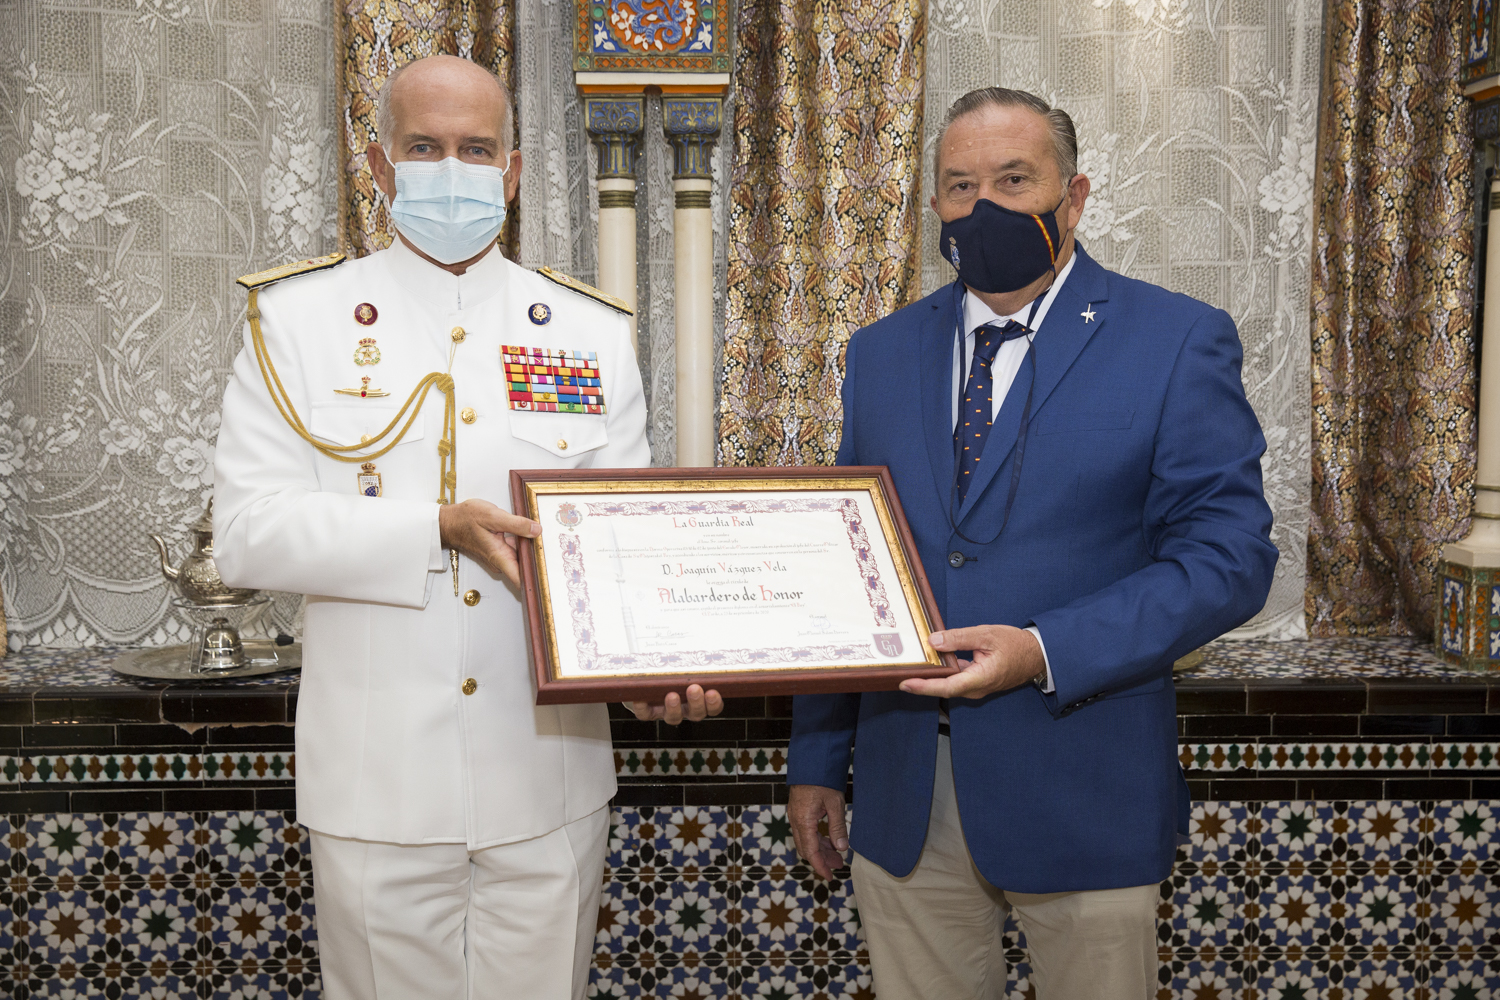 El jefe del Cuarto Militar entrega al profesor de equitación Joaquín Vázquez Vela el título de alabardero de honor